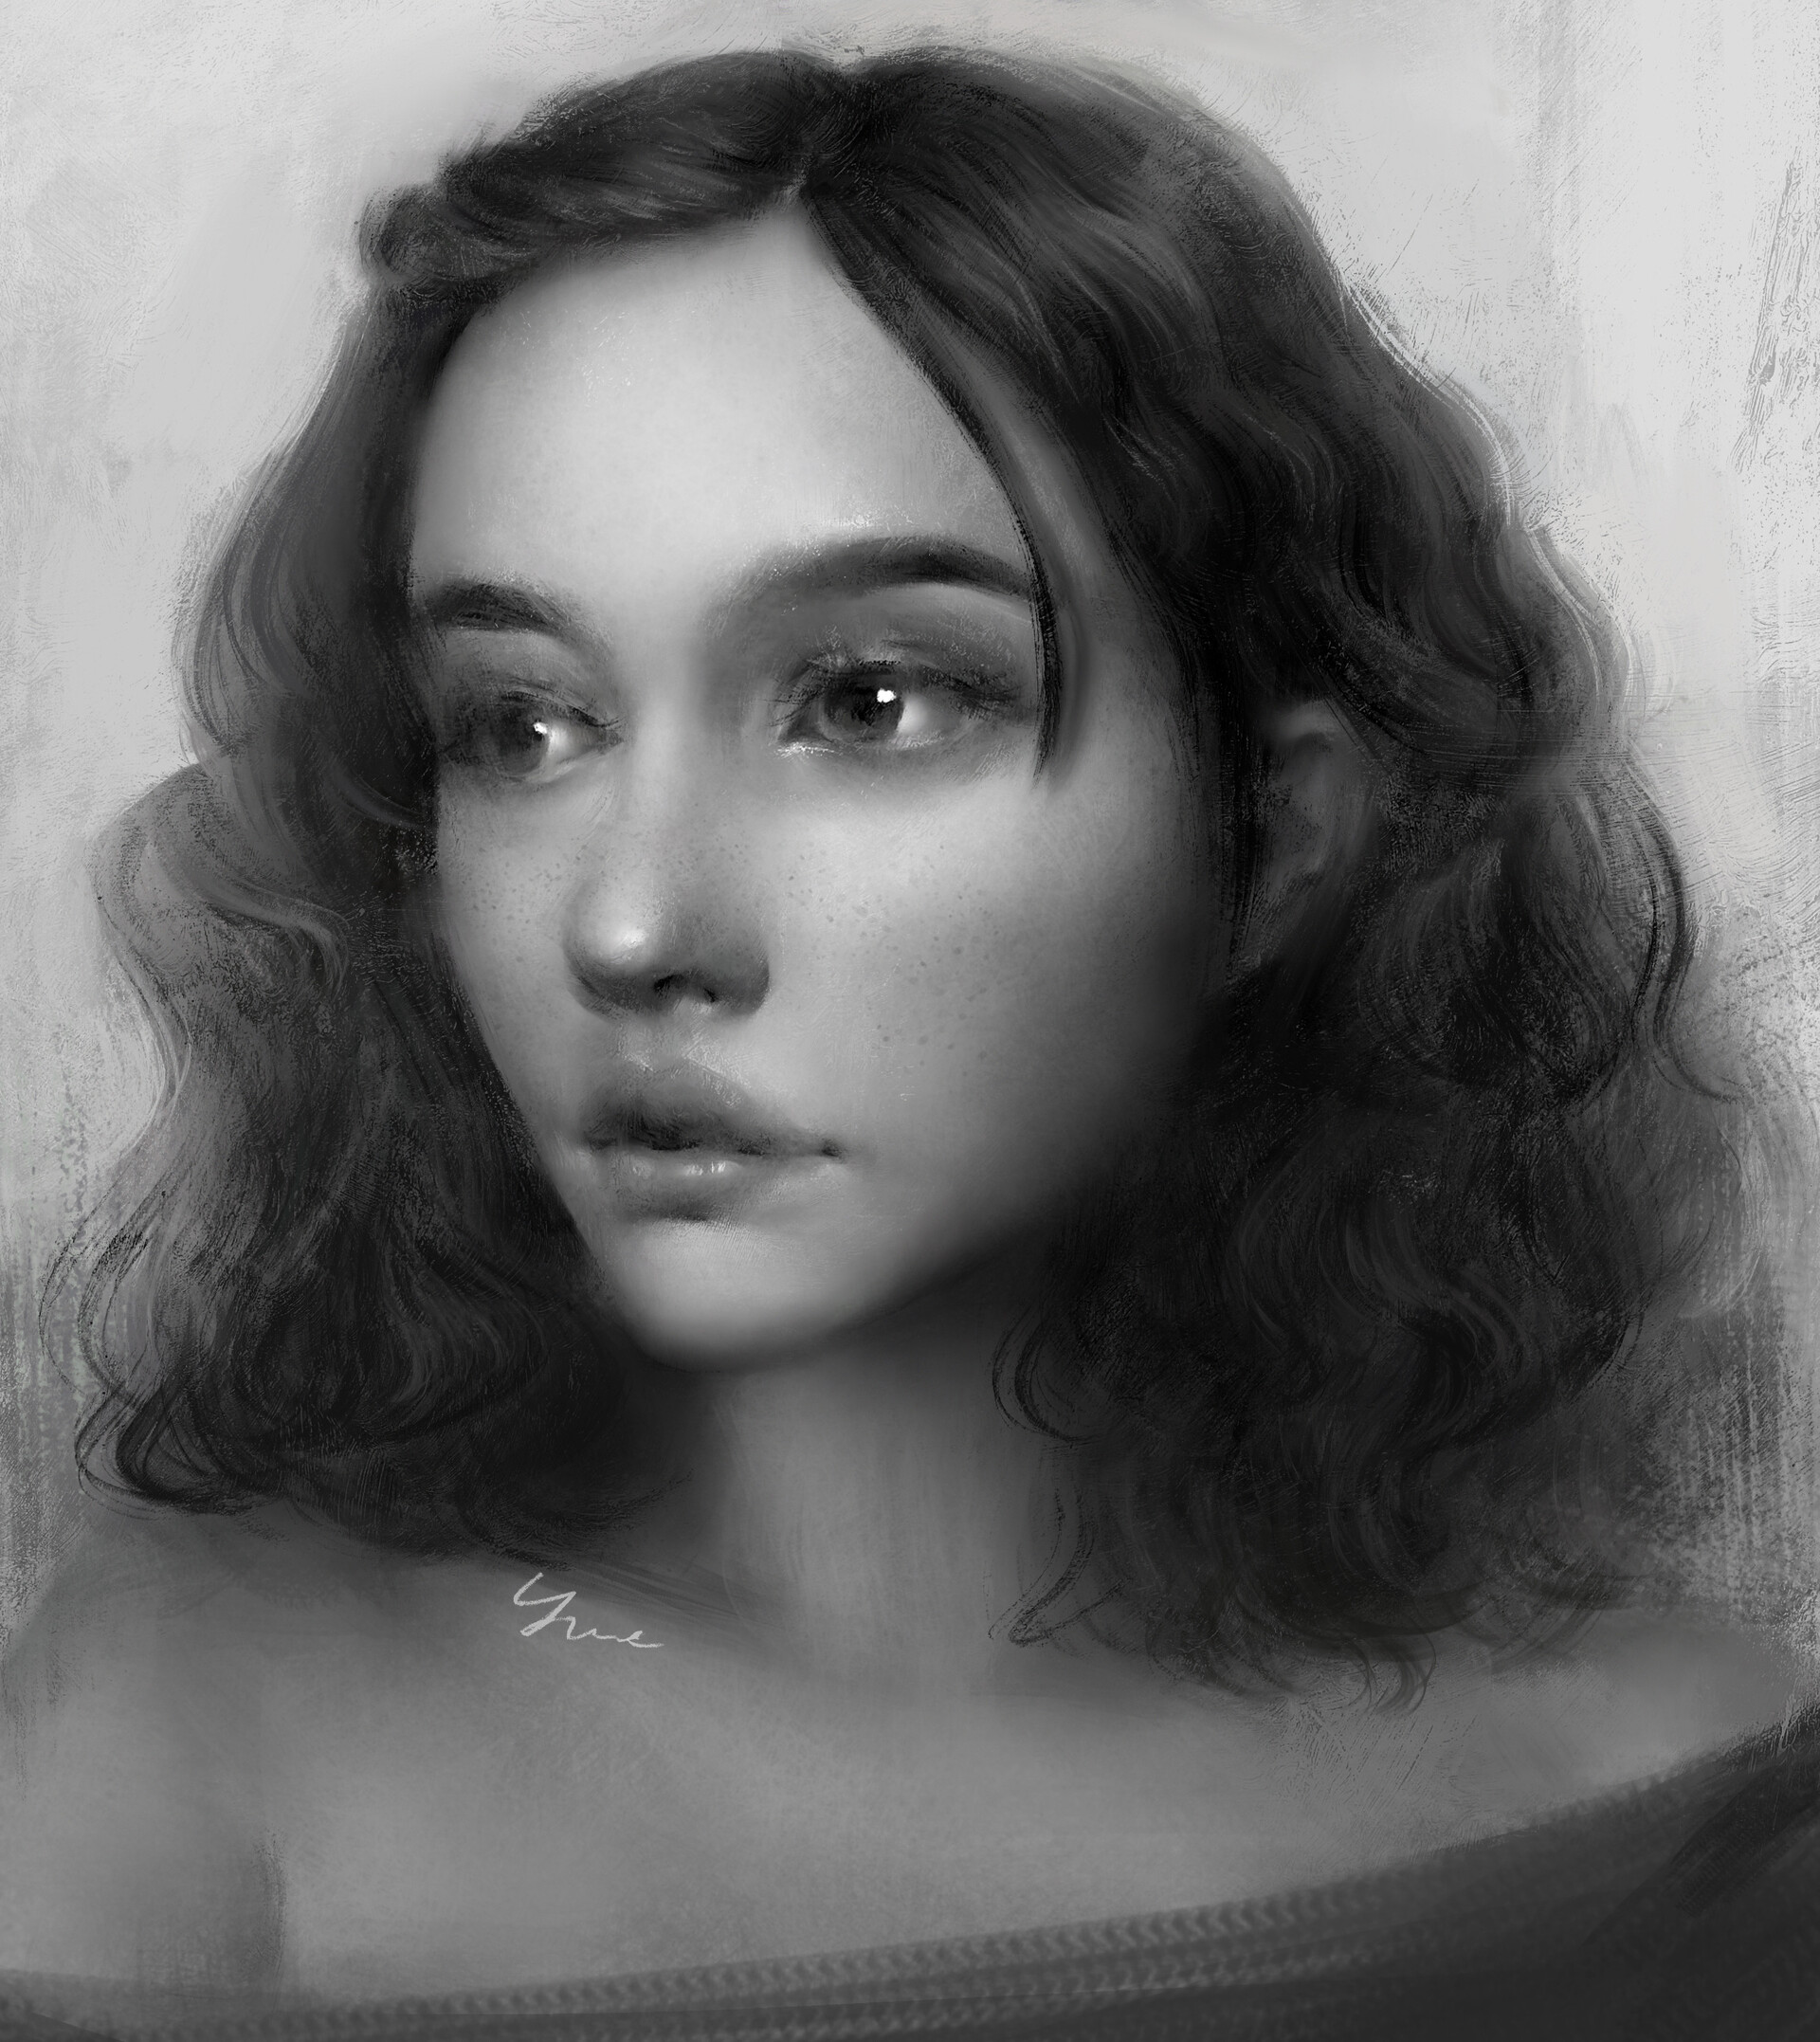 ArtStation - Female portrait